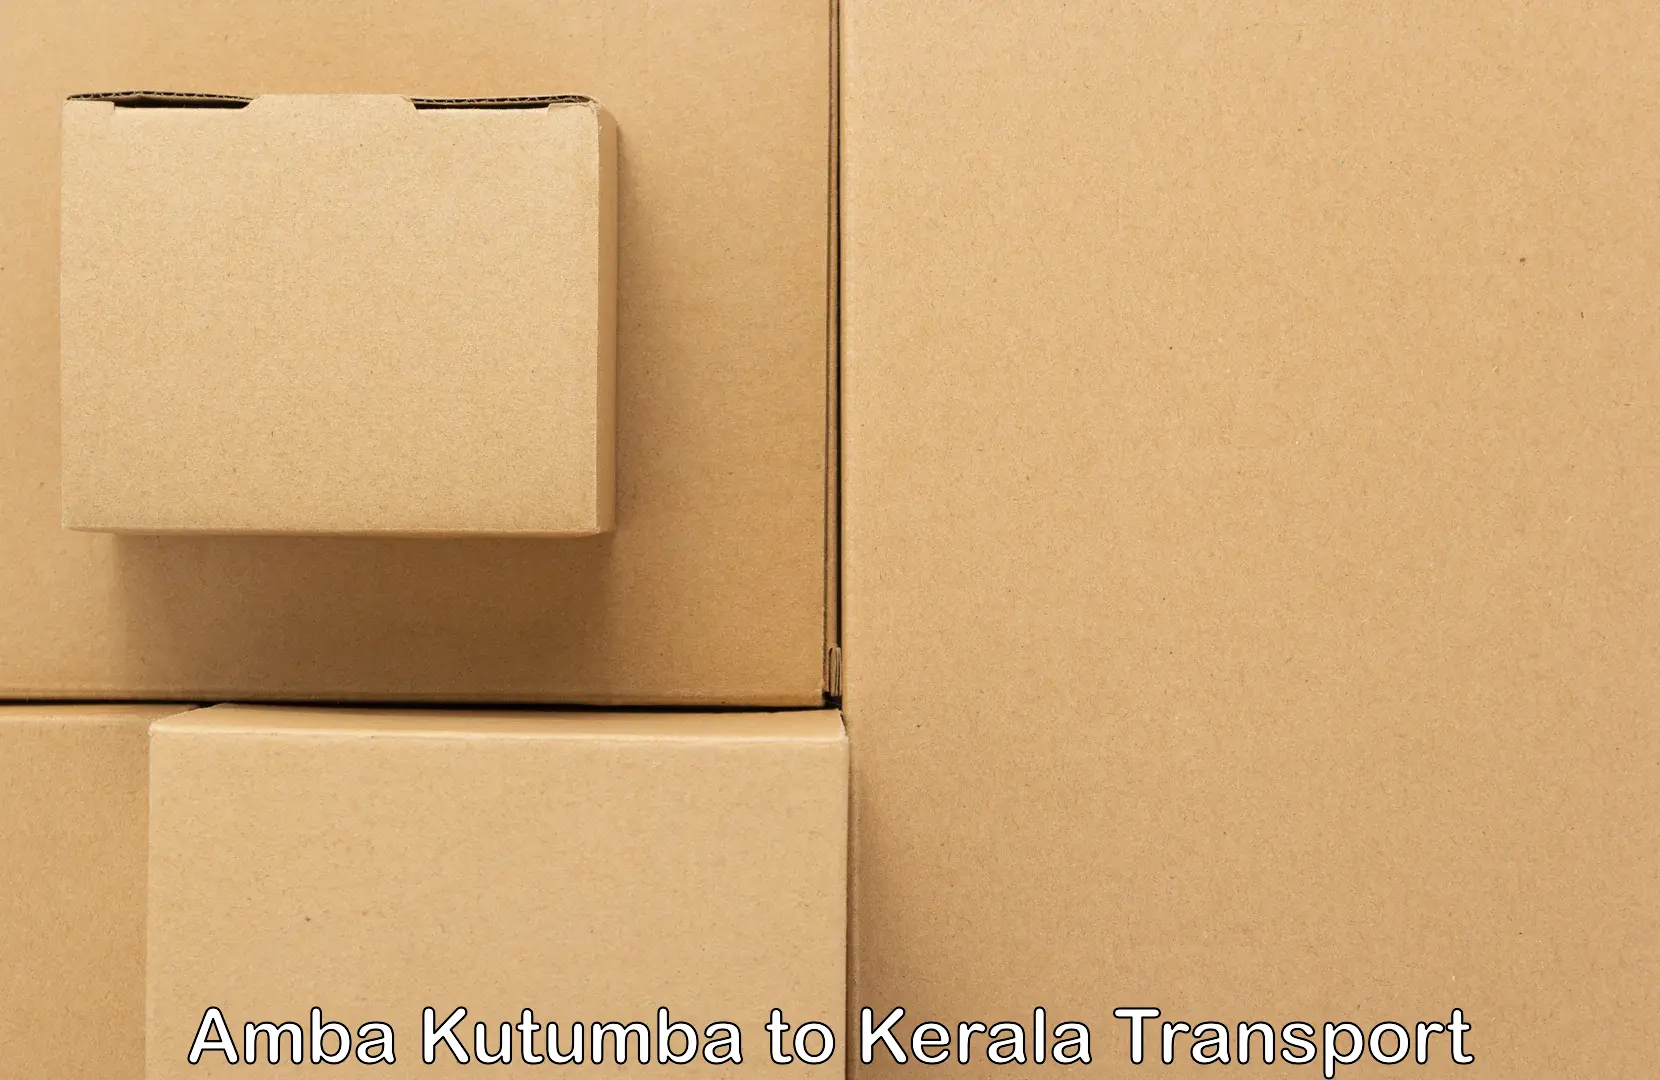 Online transport Amba Kutumba to Kattappana